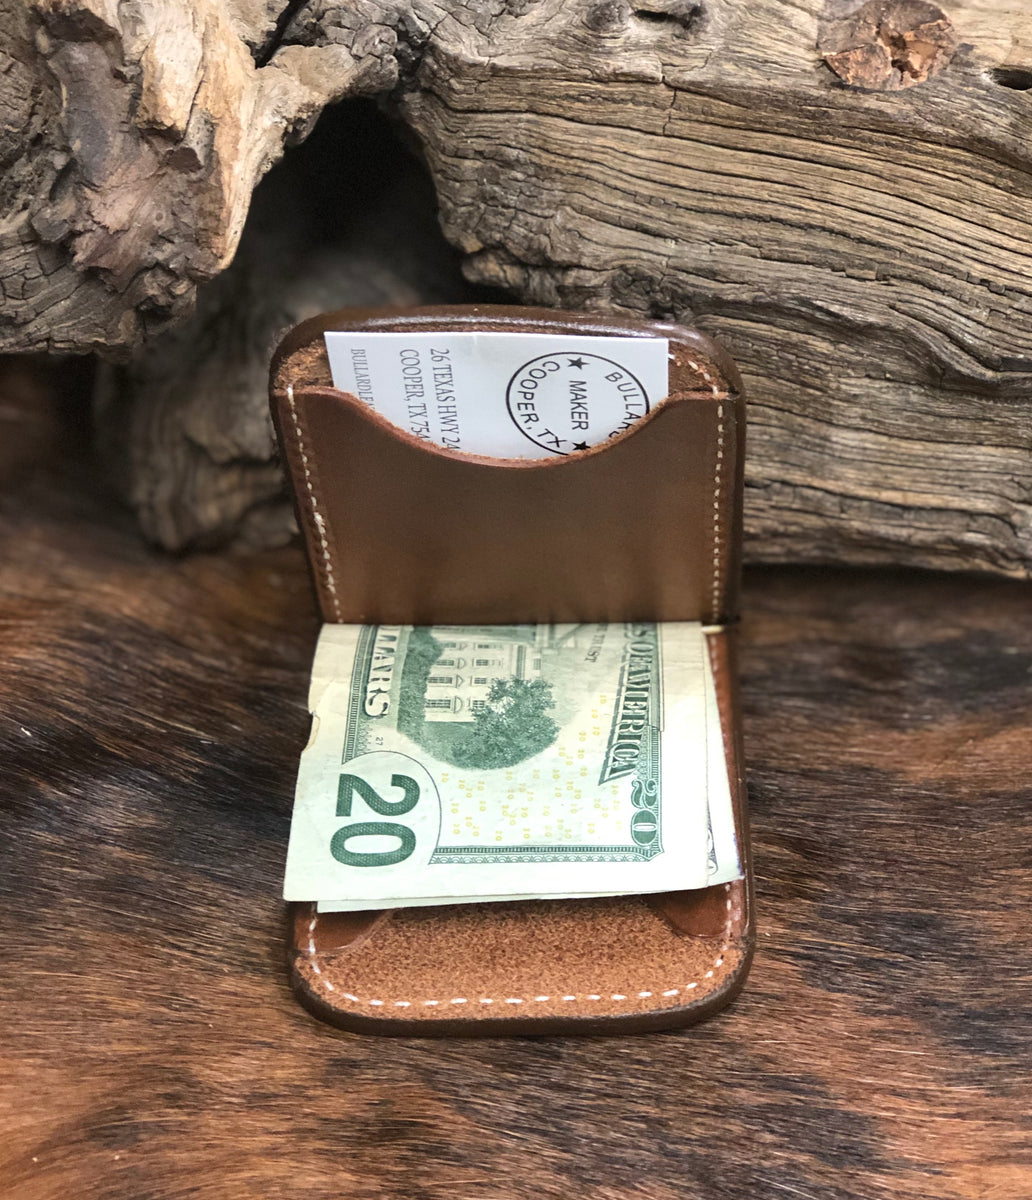 Cowboy Wallet – Bullard Leather Mfg.